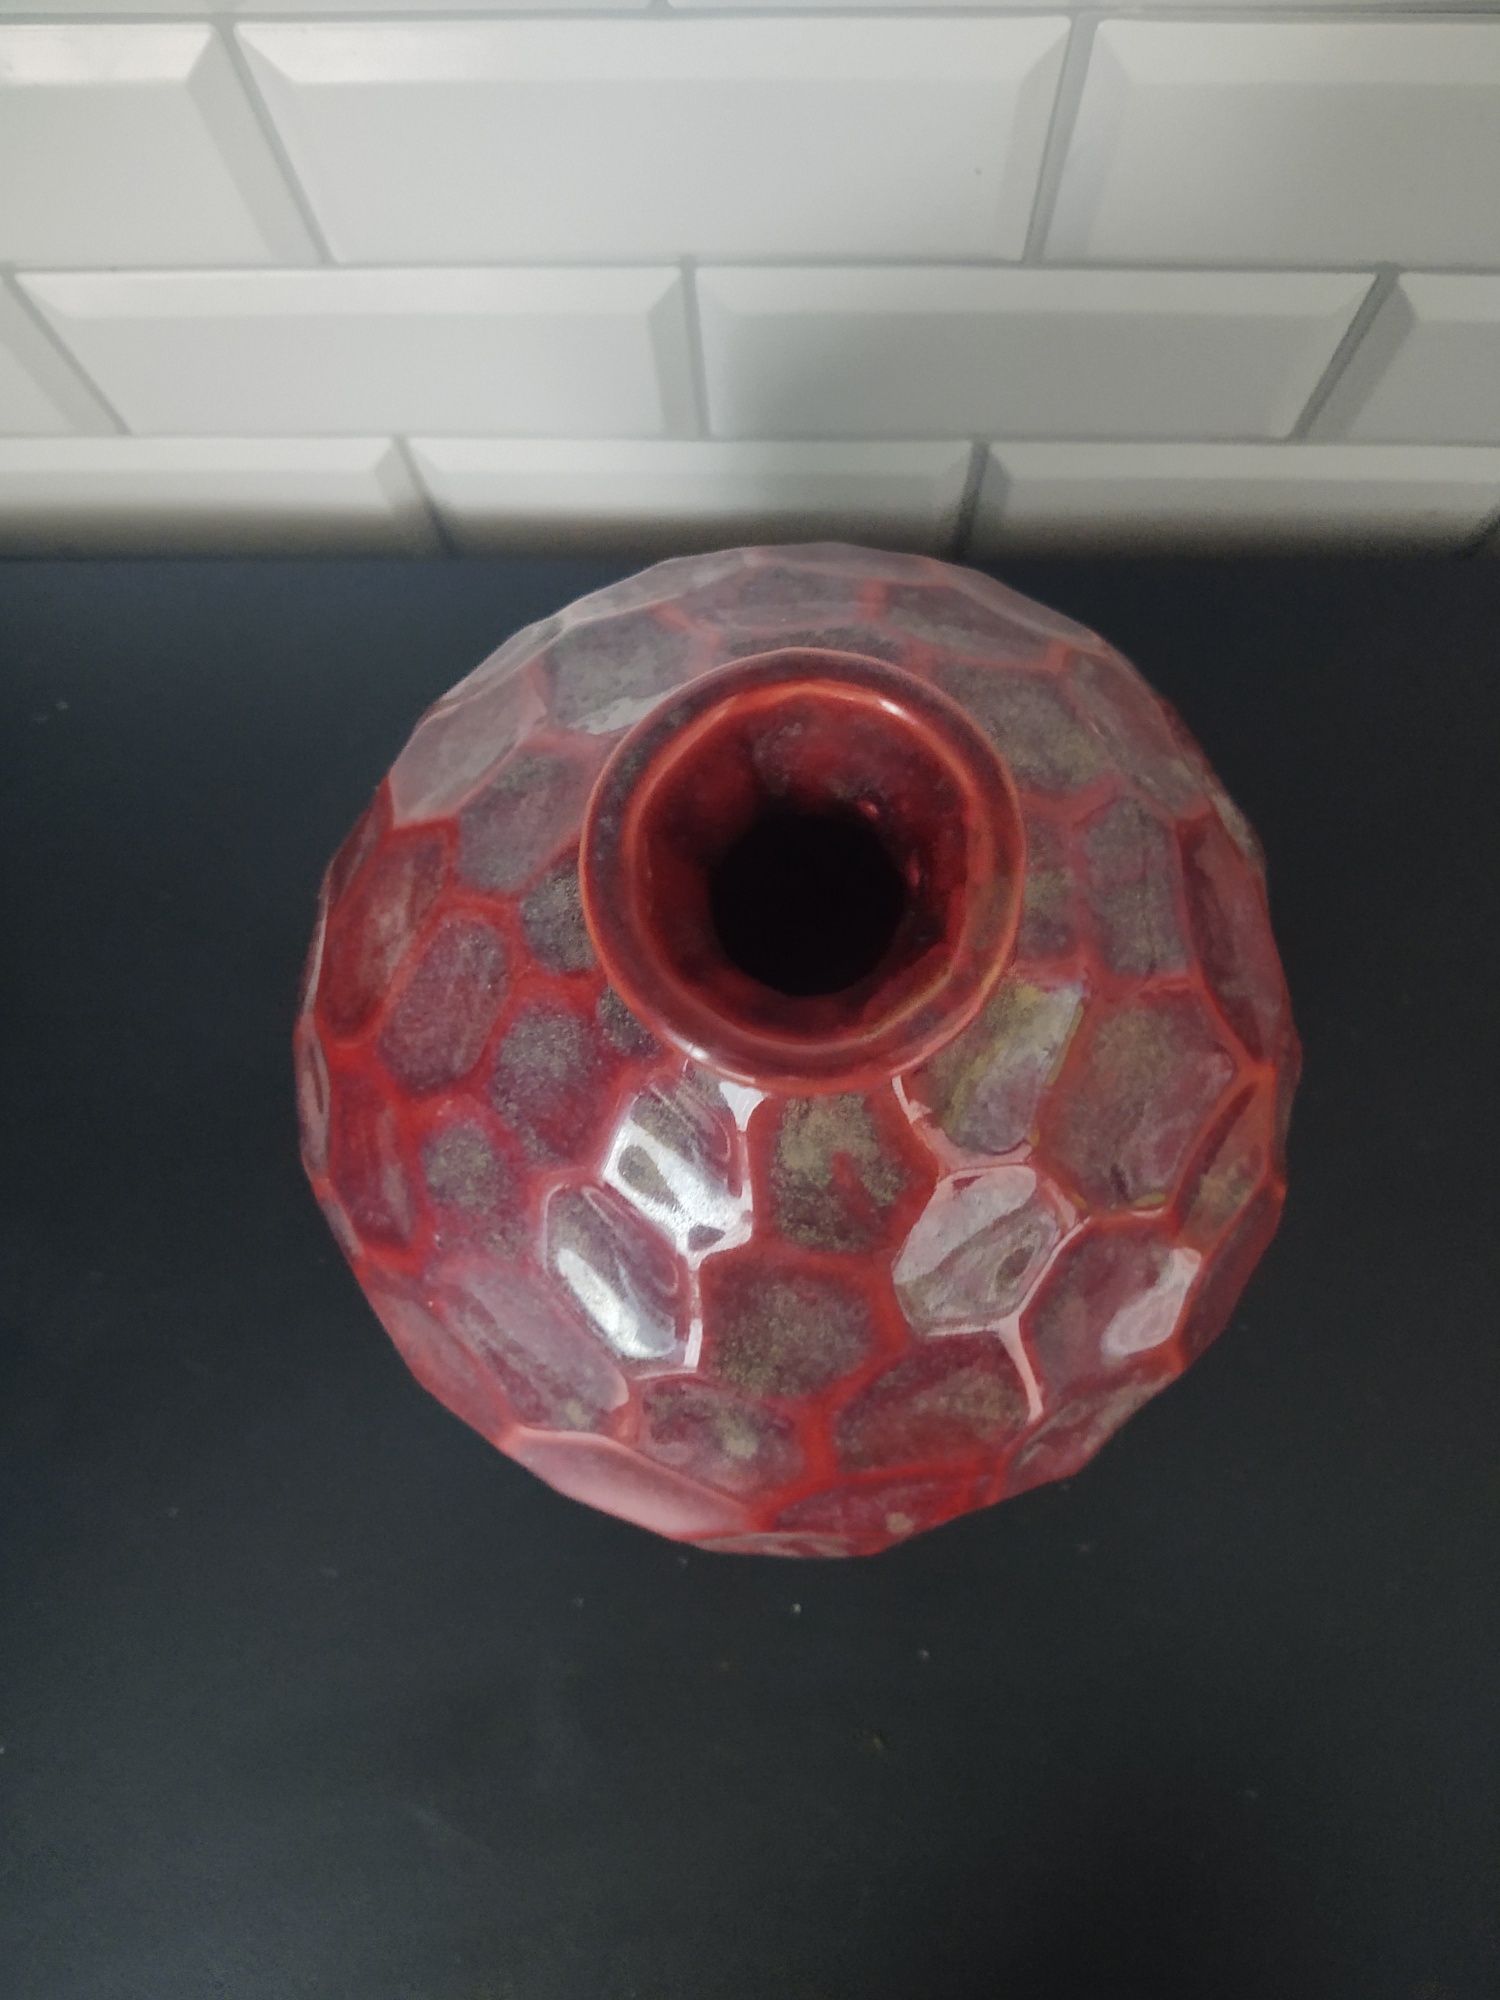 Nowy wazon! Wyjątkowy! Idealny do wielu wnętrz! Możliwość wysyłki Olx